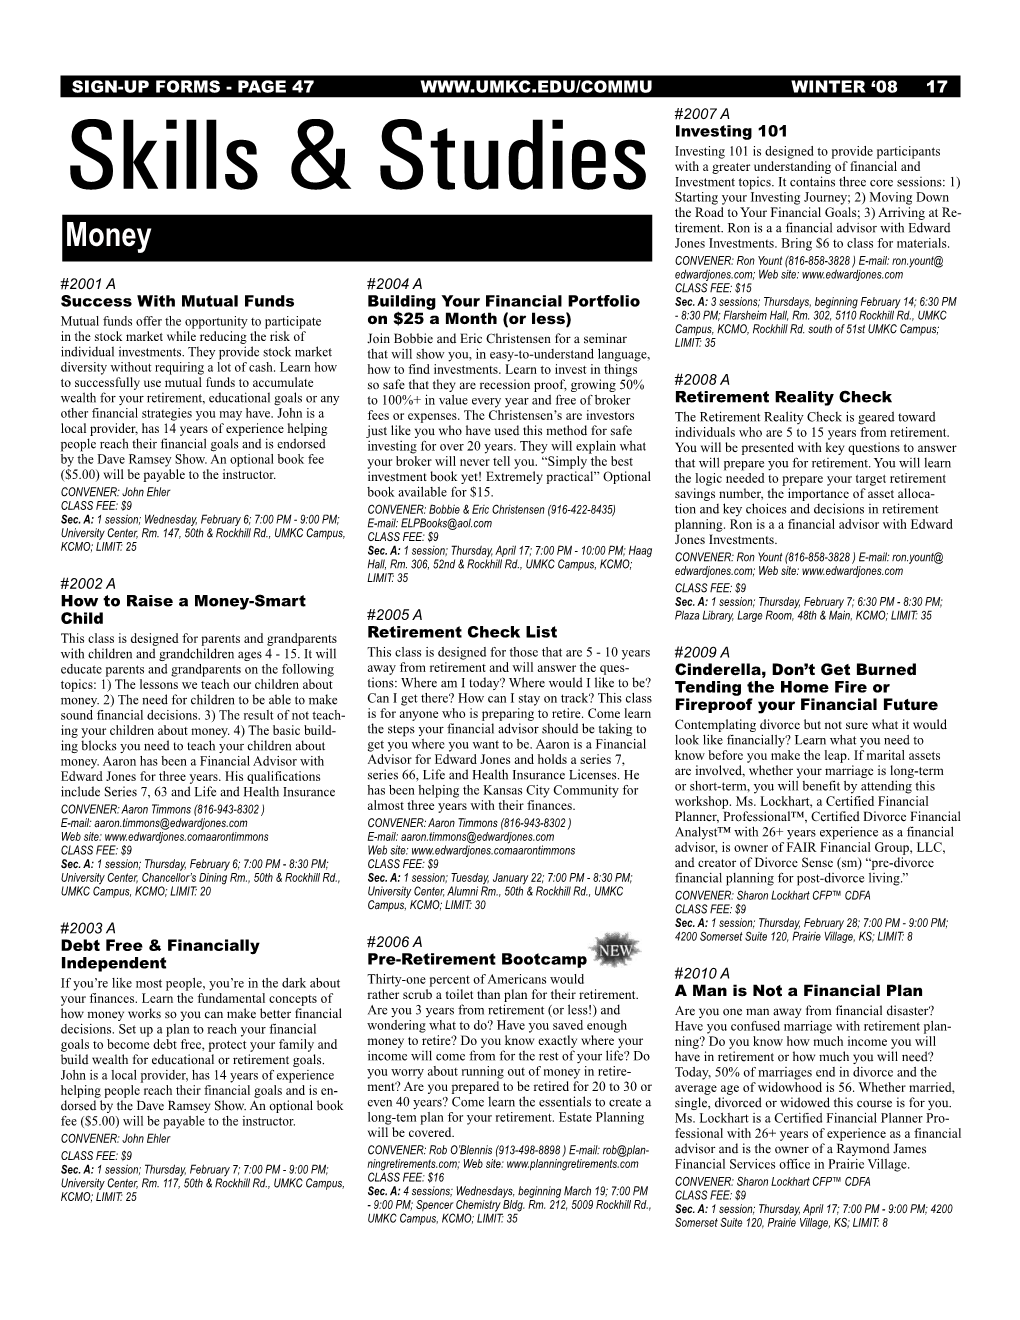 Skills & Studies